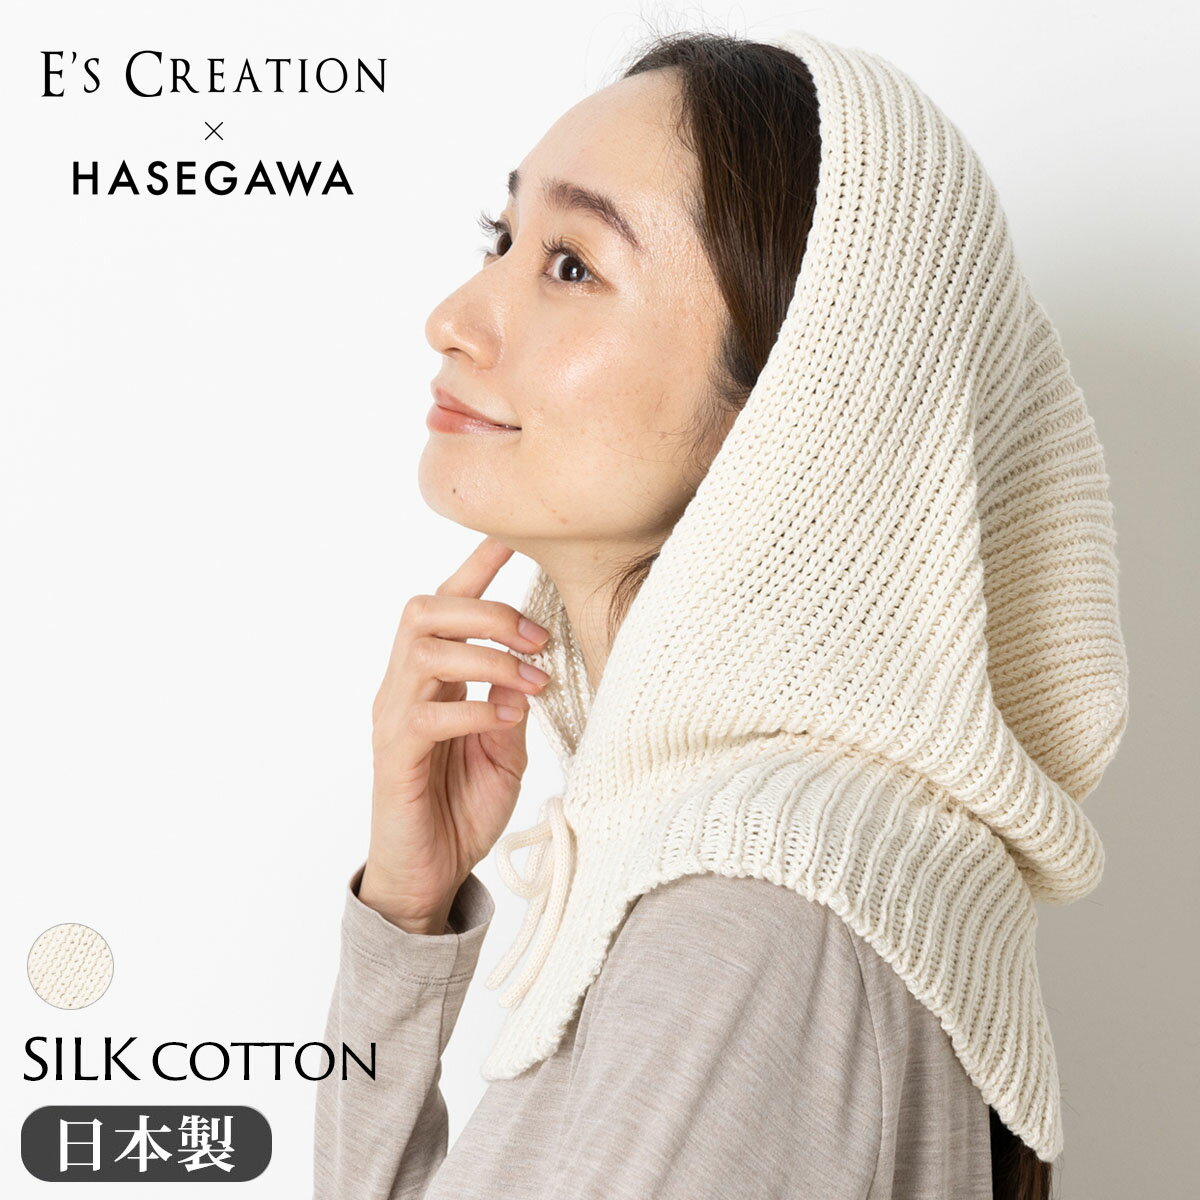 新作お試し価格！シルクコットン バラクラバ 日本製 縫い目のないホールガーメント ホワイト 白 クリーム